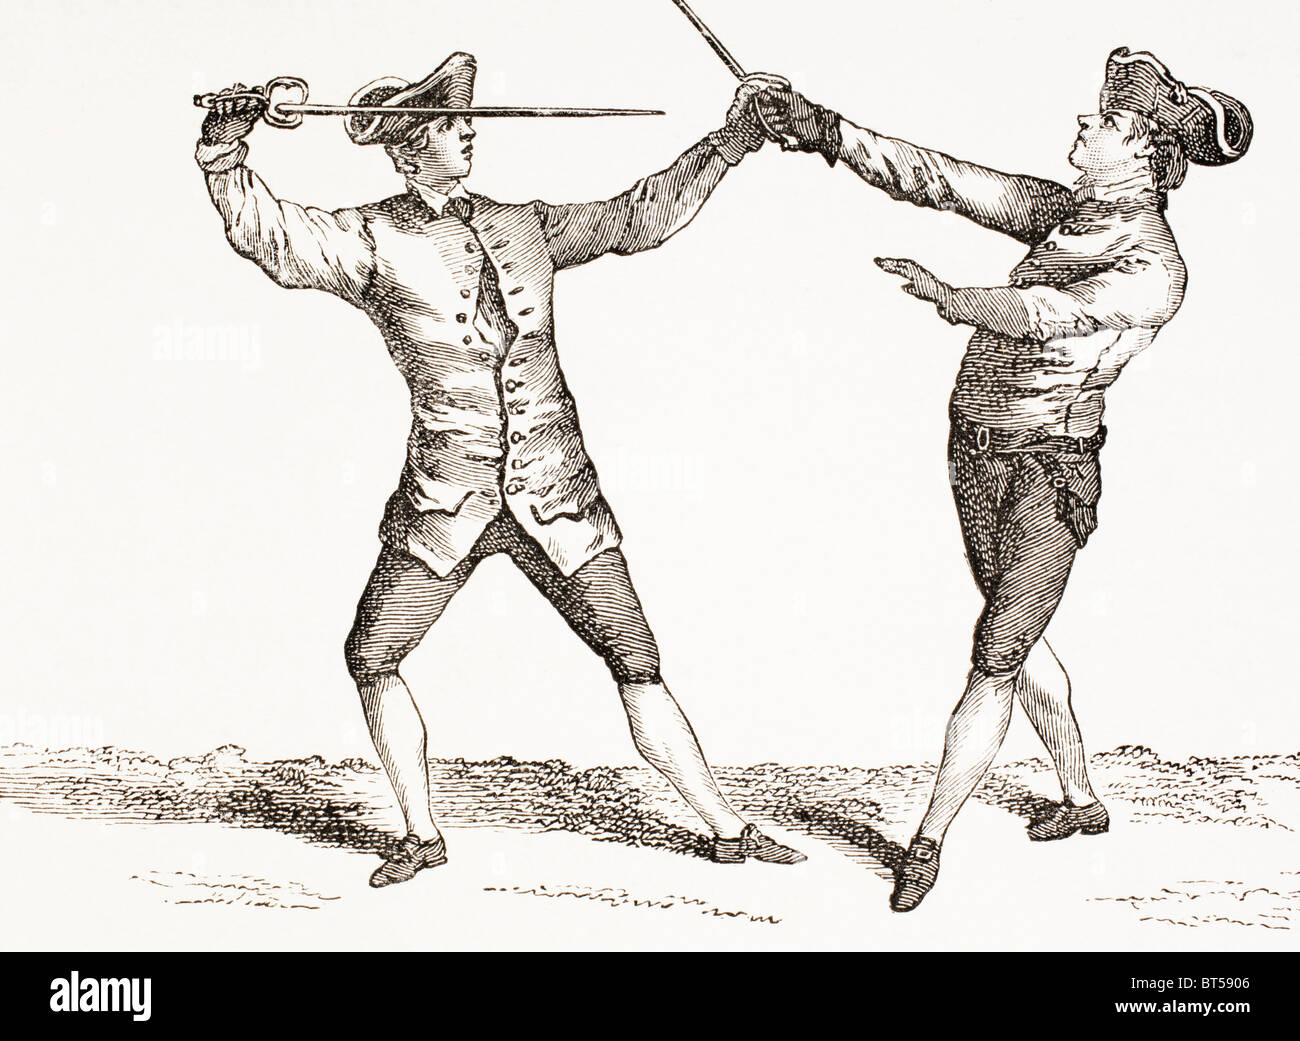 Ein Schwertkämpfer in Stellung um Schub nach seinem Gegner Schwert oder Schwert Hand greifen. Stockfoto